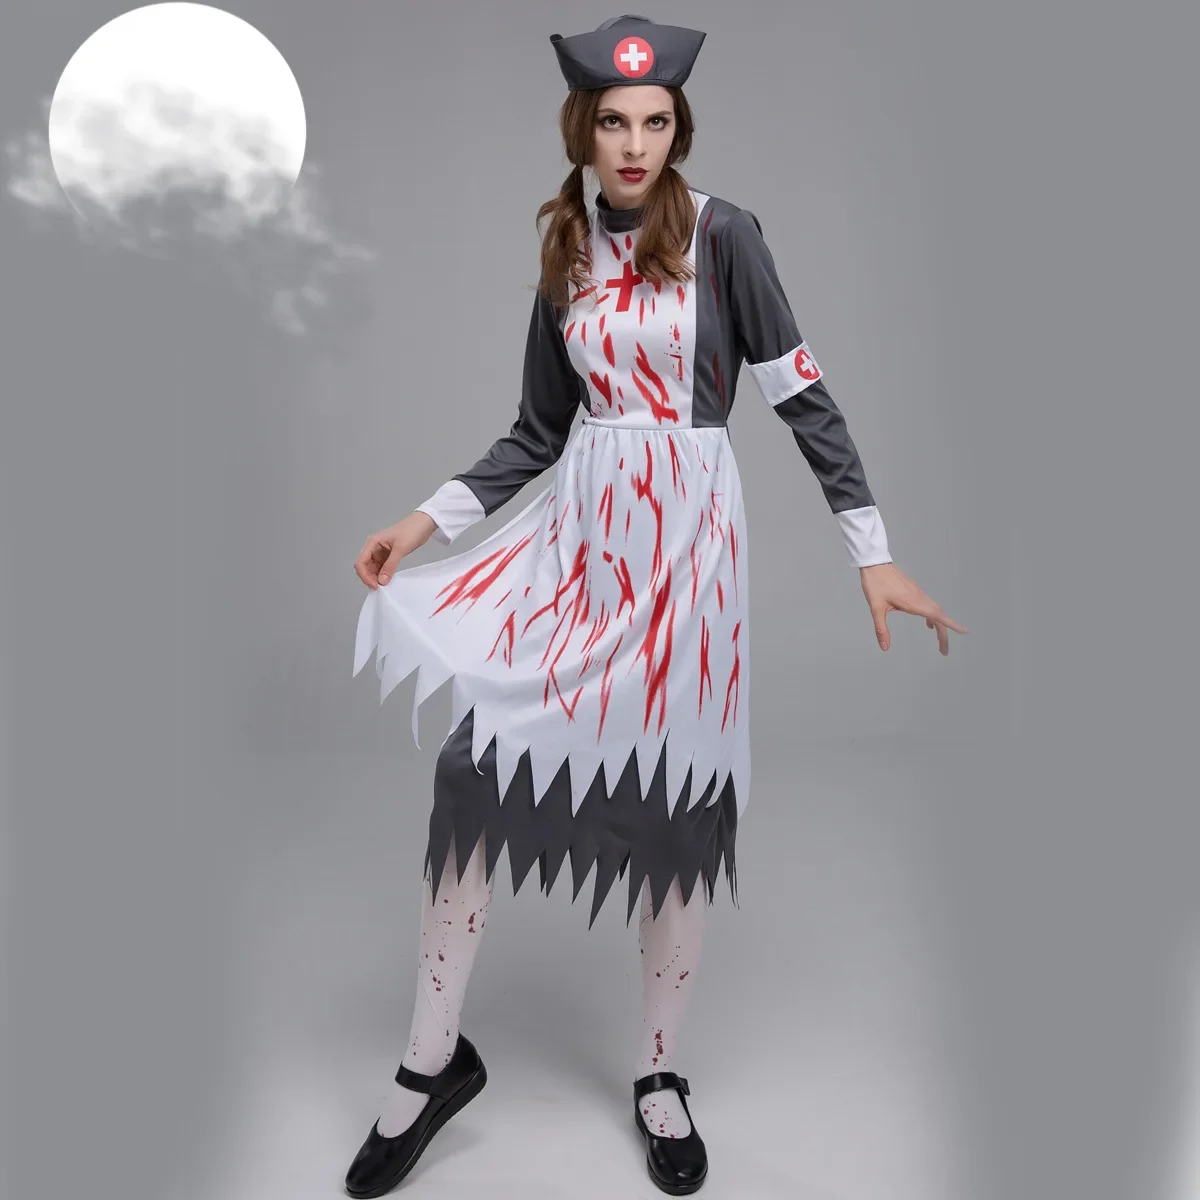 

Костюм вампира черного цвета на Хэллоуин, костюм монахини, священника, униформа персонажа зомби, костюм горничной для косплея, страшное платье доктора